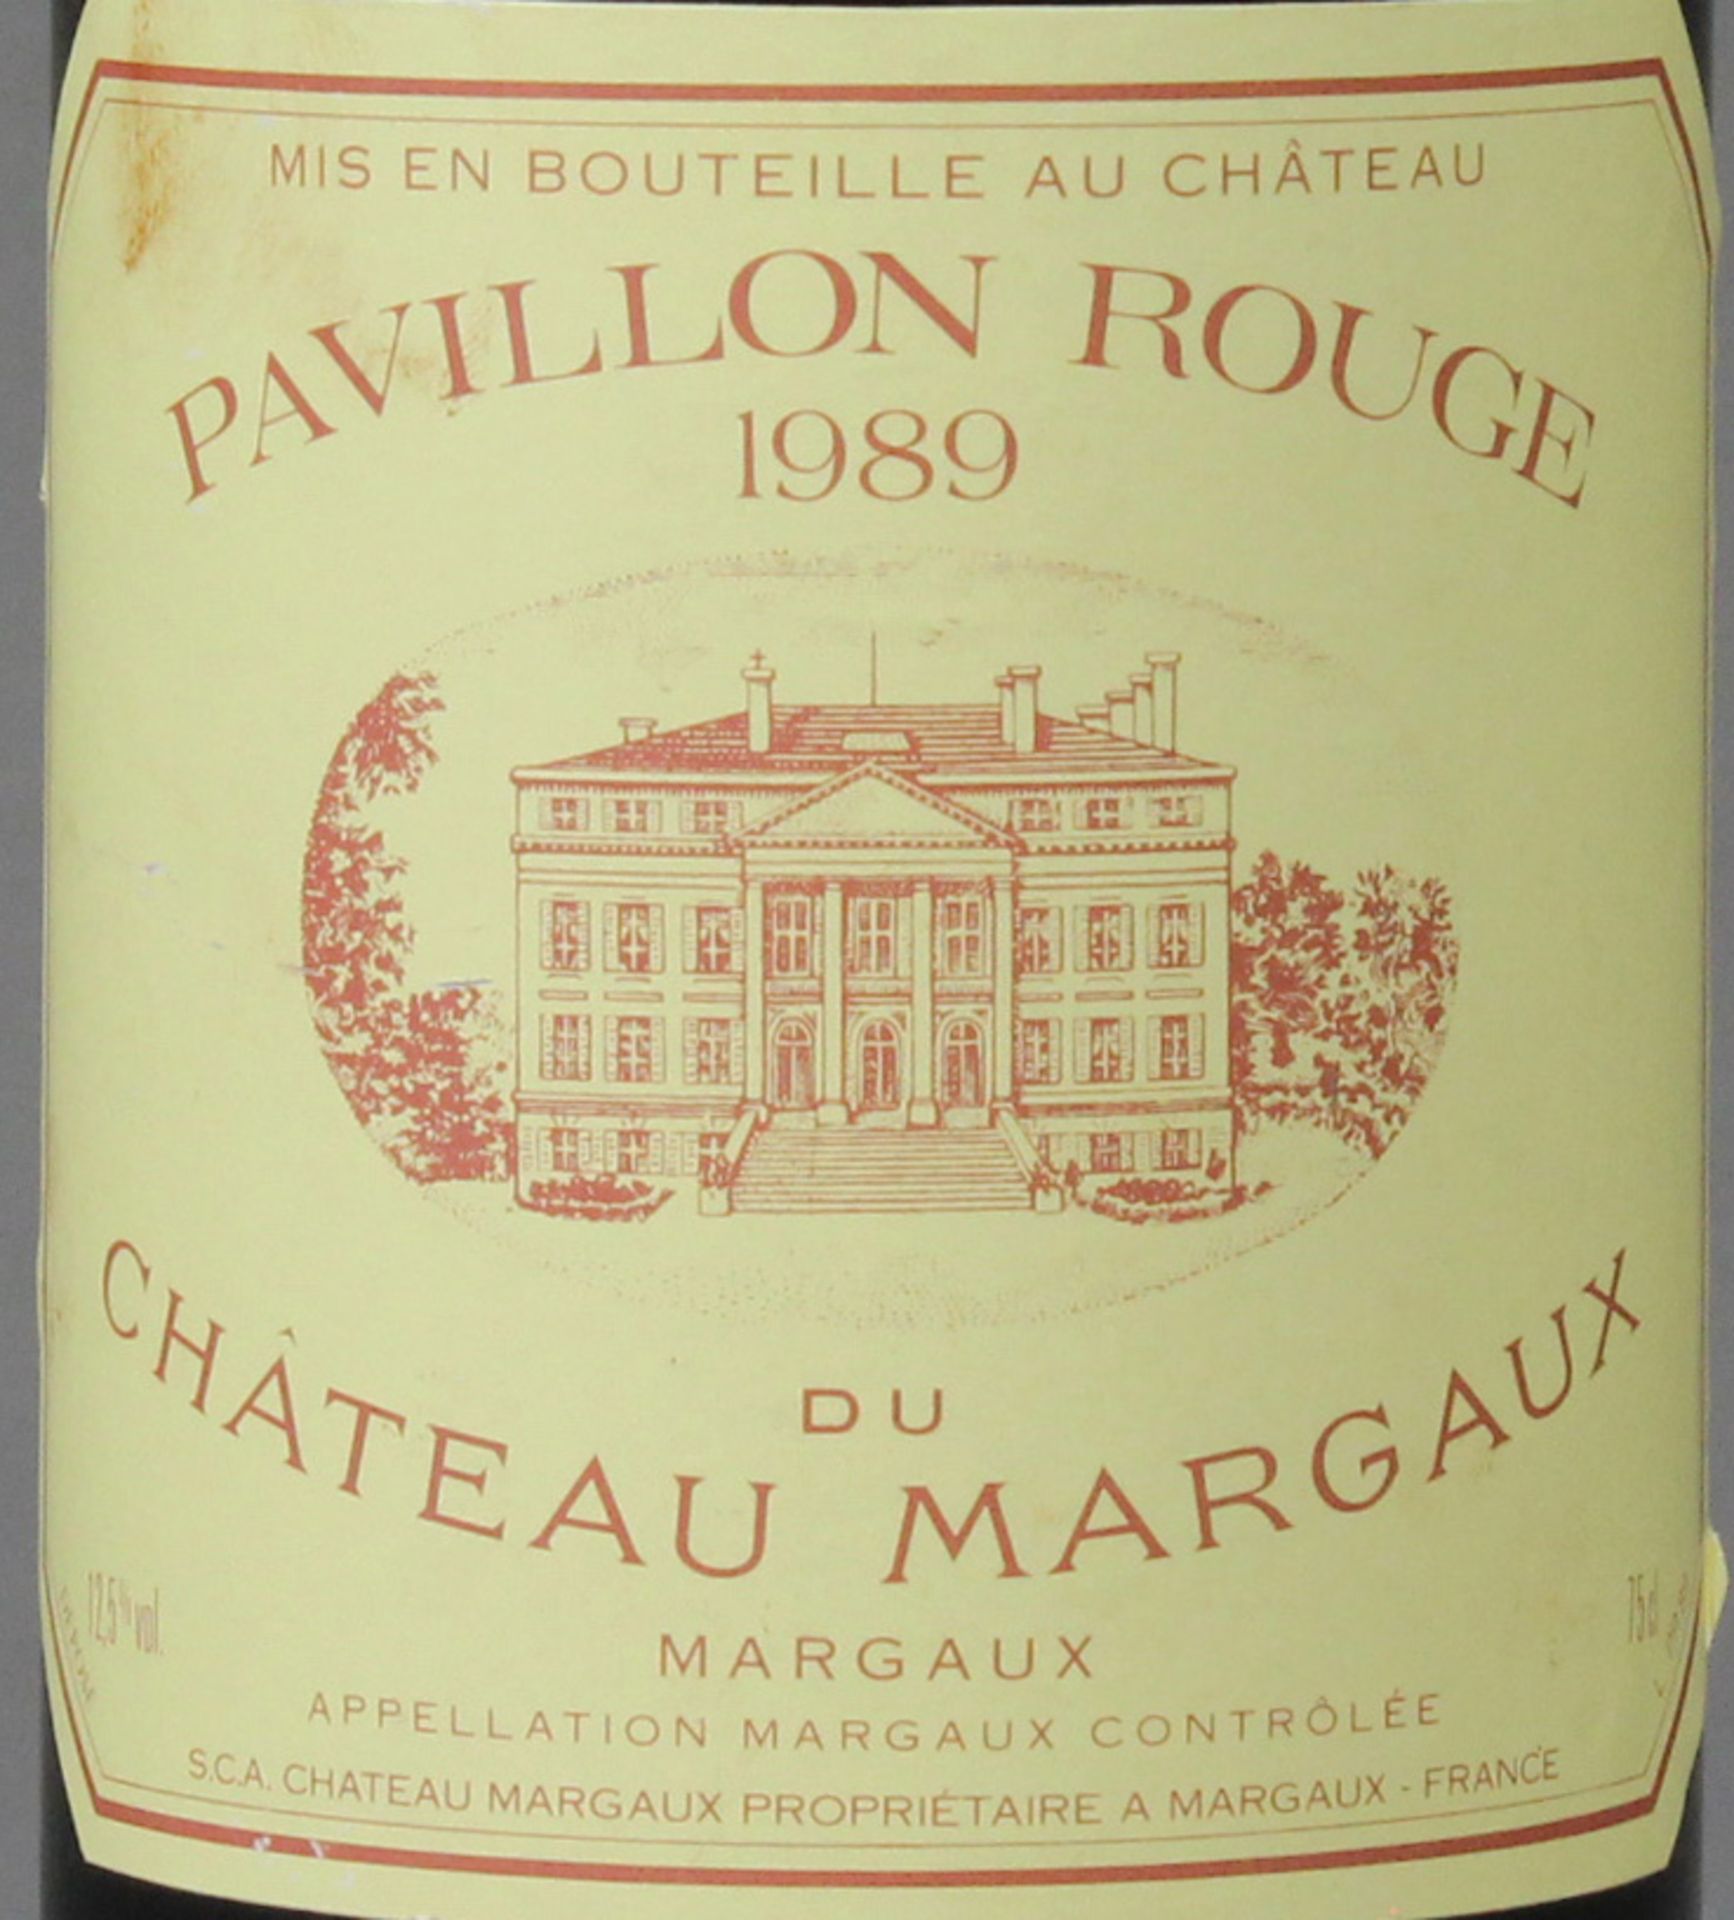 1989 Pavillon Rouge du Chateau Margaux, eine ganze Flache. - Image 2 of 3